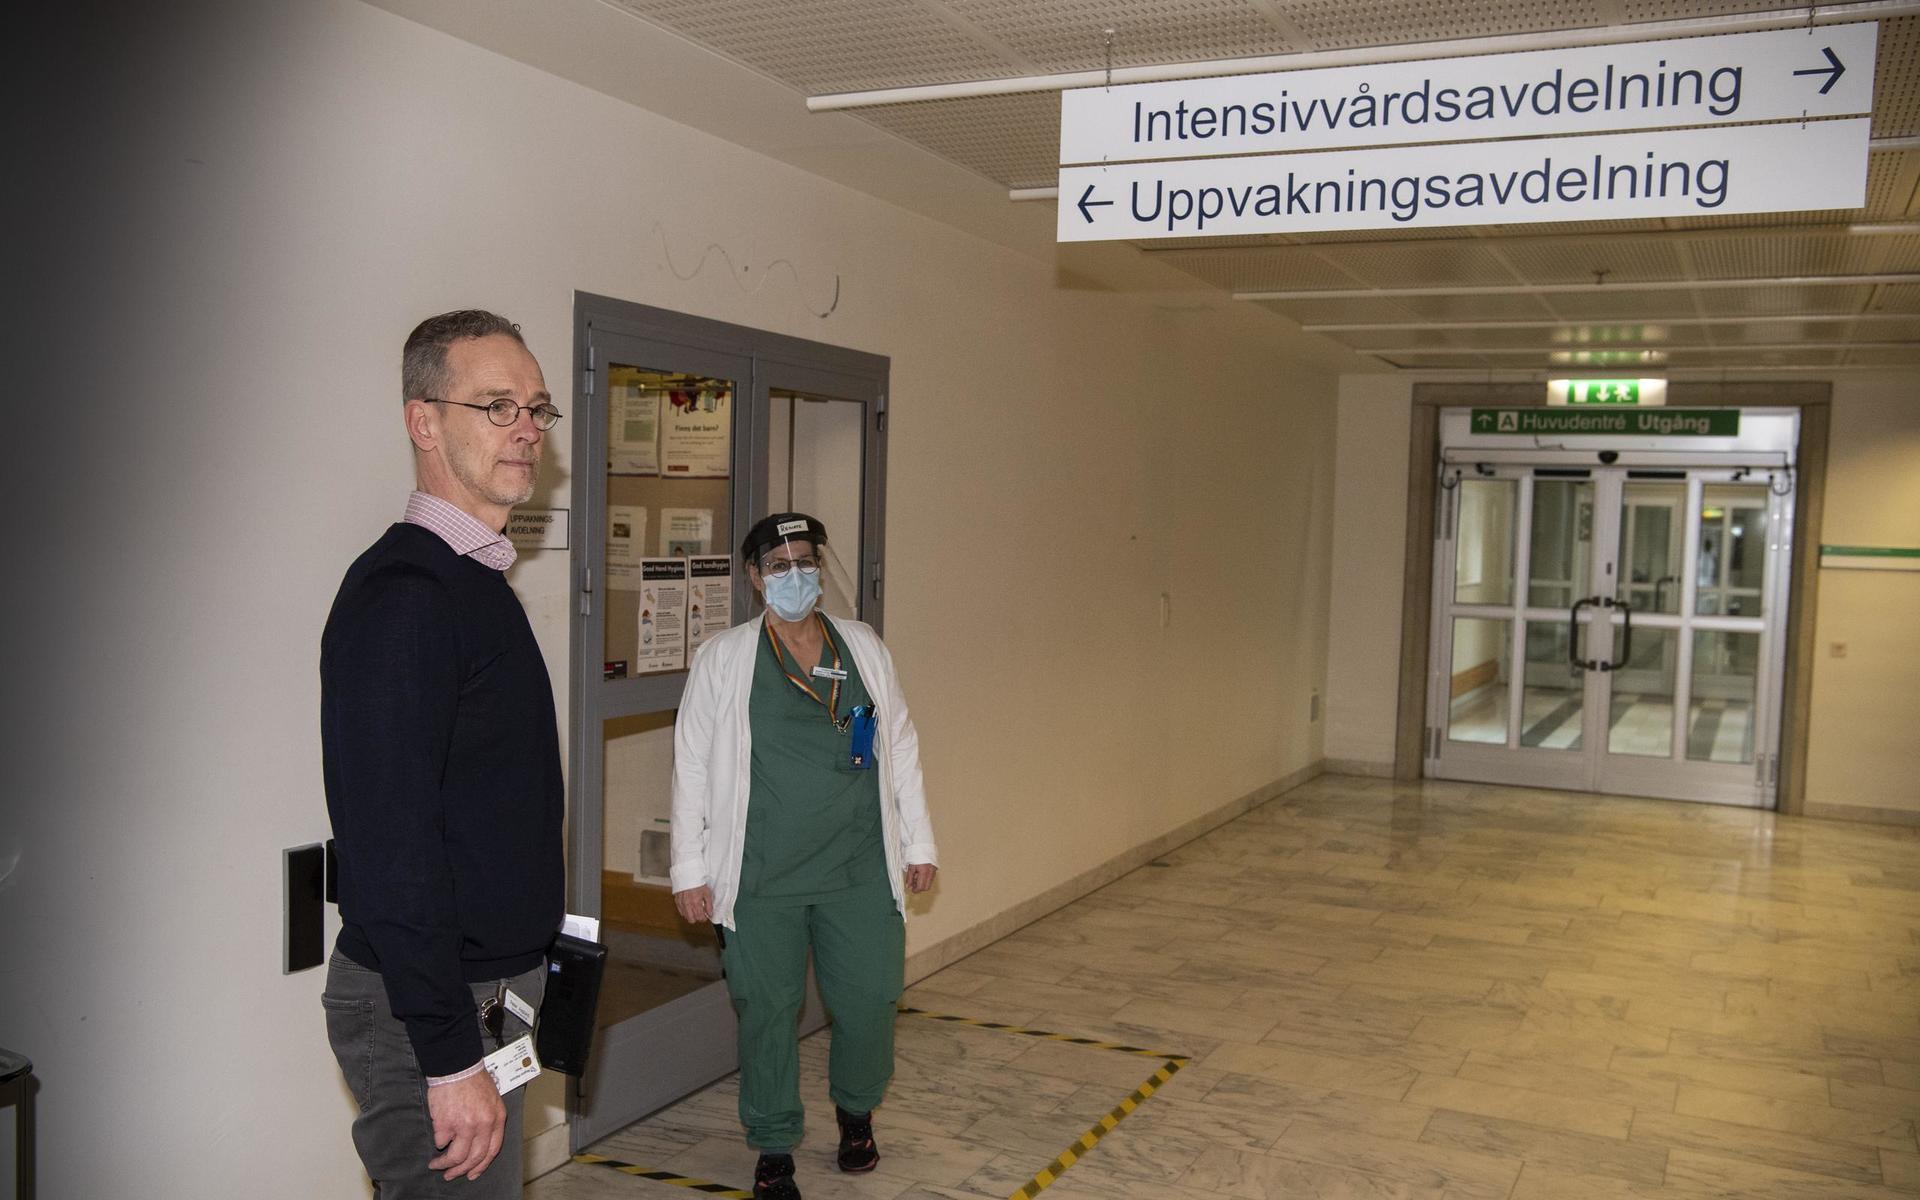 Peter Asplund som är verksamhetschef för IVA på Hallands sjukhus Halmstad berättar att regionens IVA-avdelningar kommer återgå till normalläge efter att antalet patienter som kräver vård för covid-19 sjunkit.